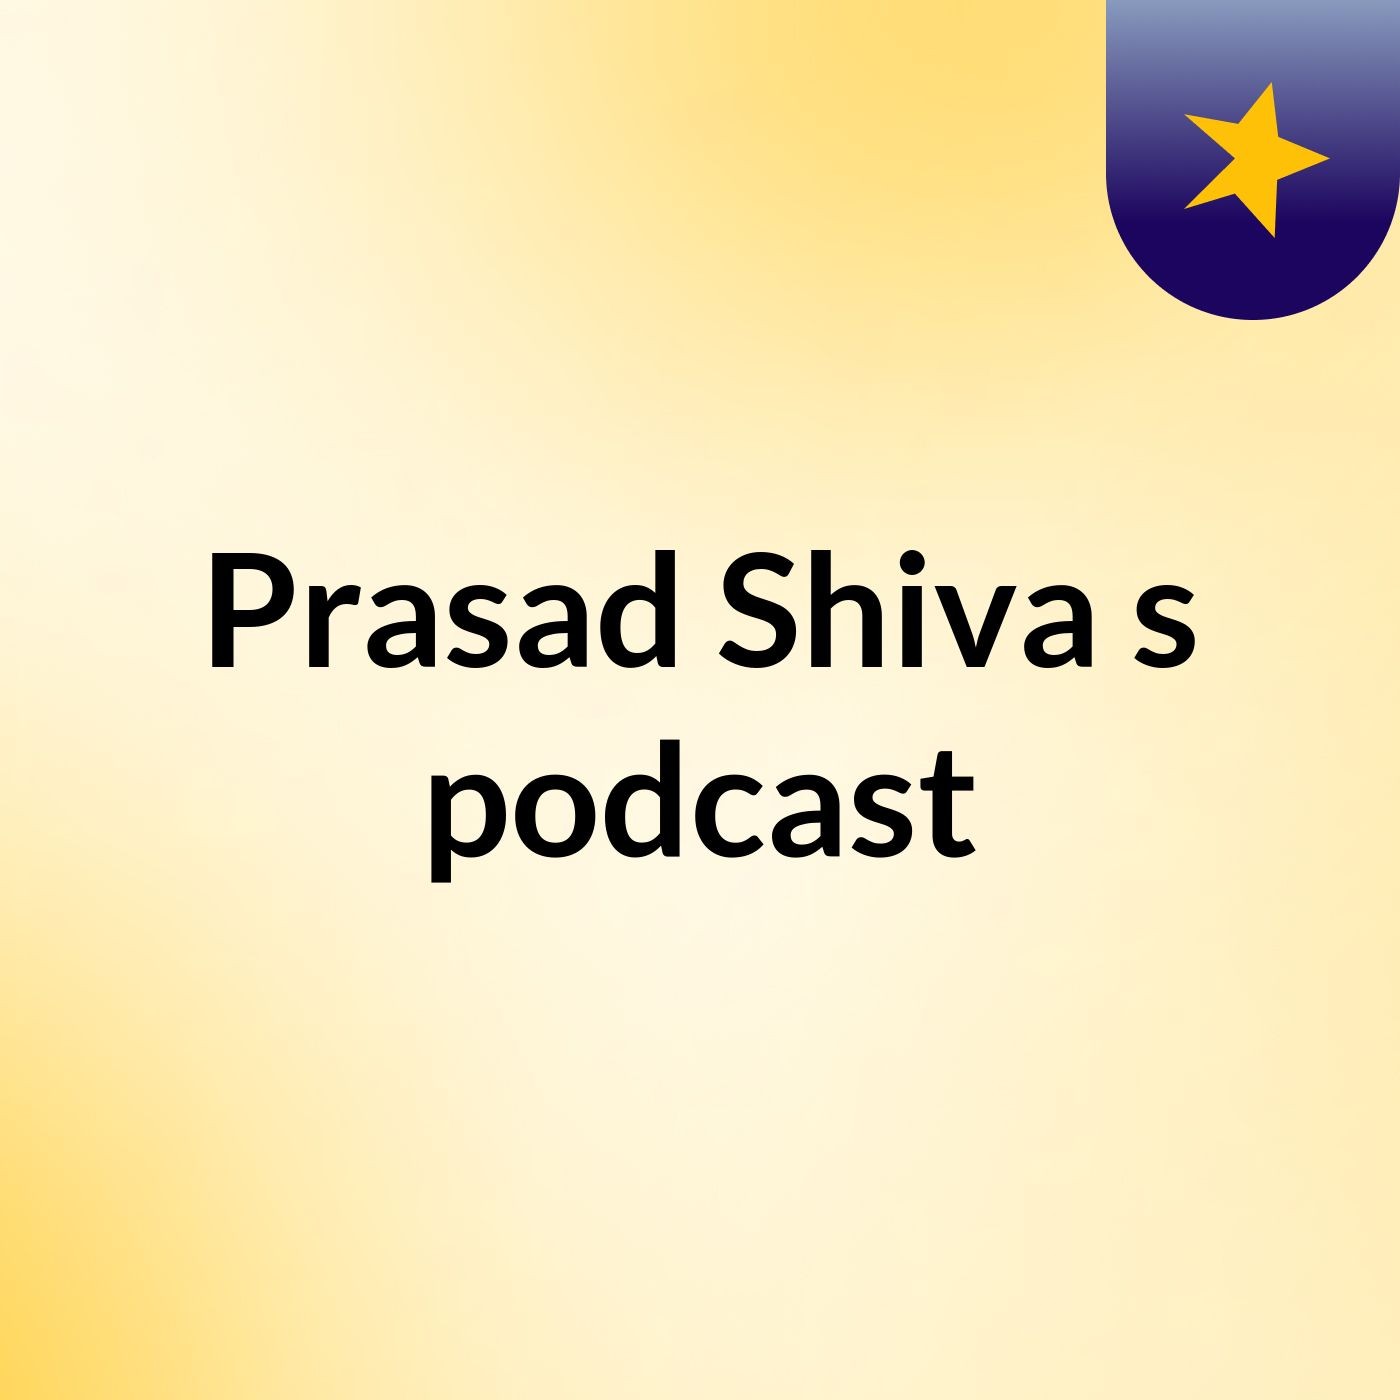 Prasad Shiva's podcast